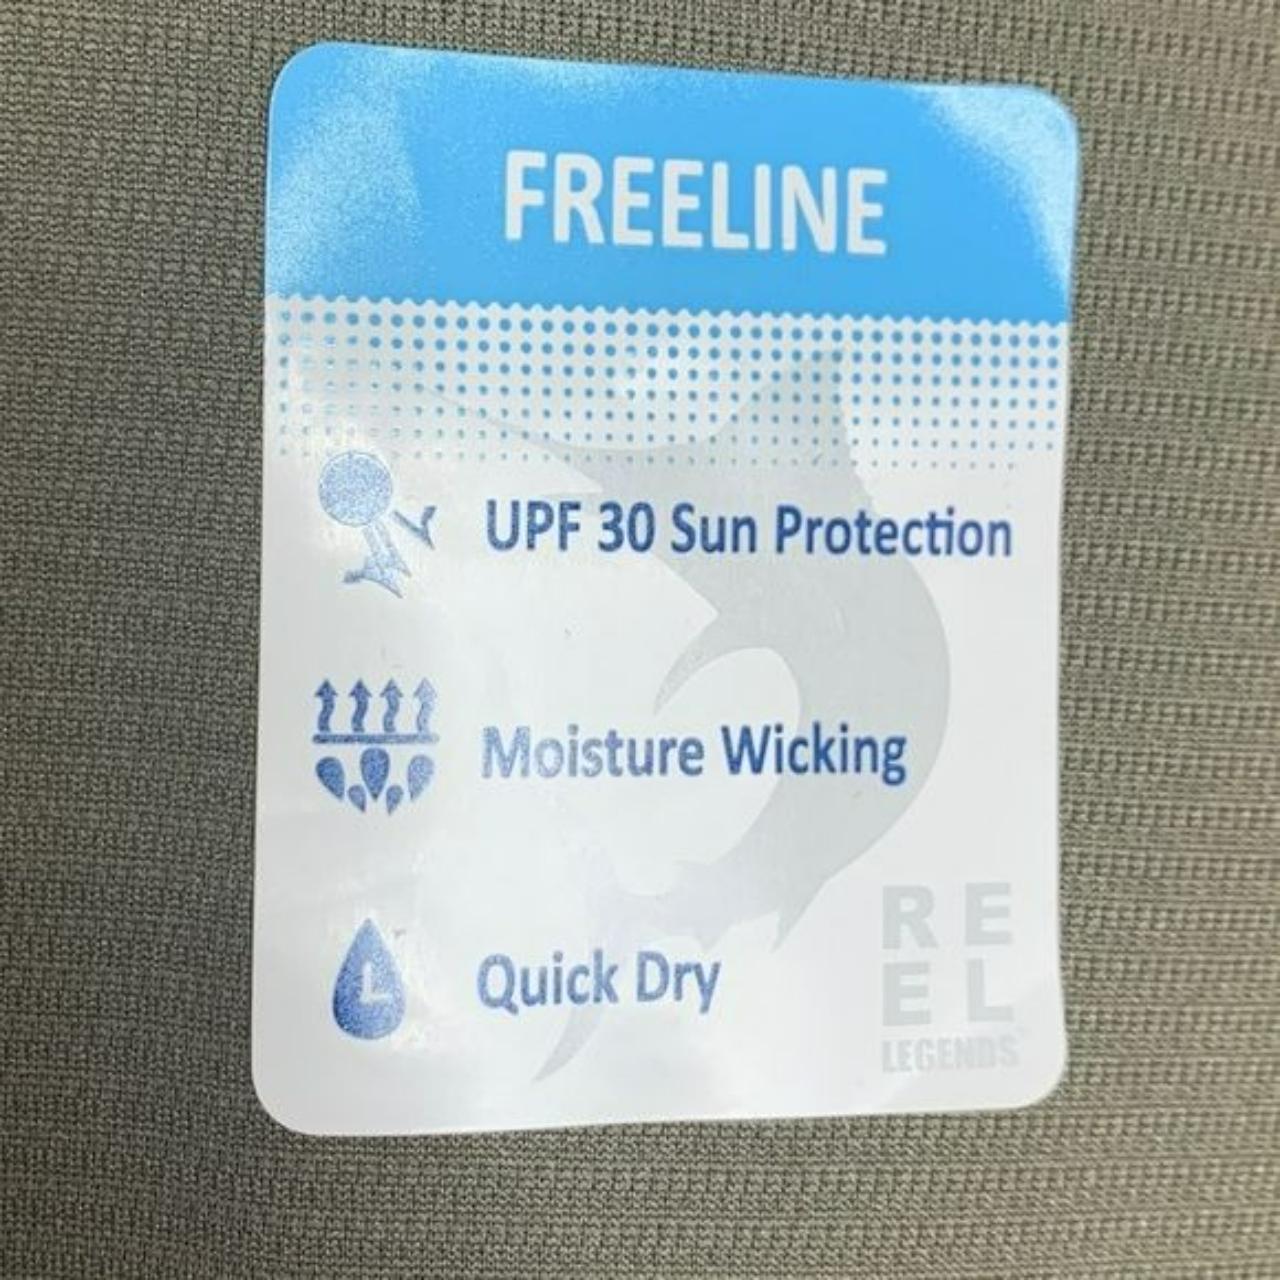 NWT Reel Legends Freeline UV Protection Shirt Olive - Depop